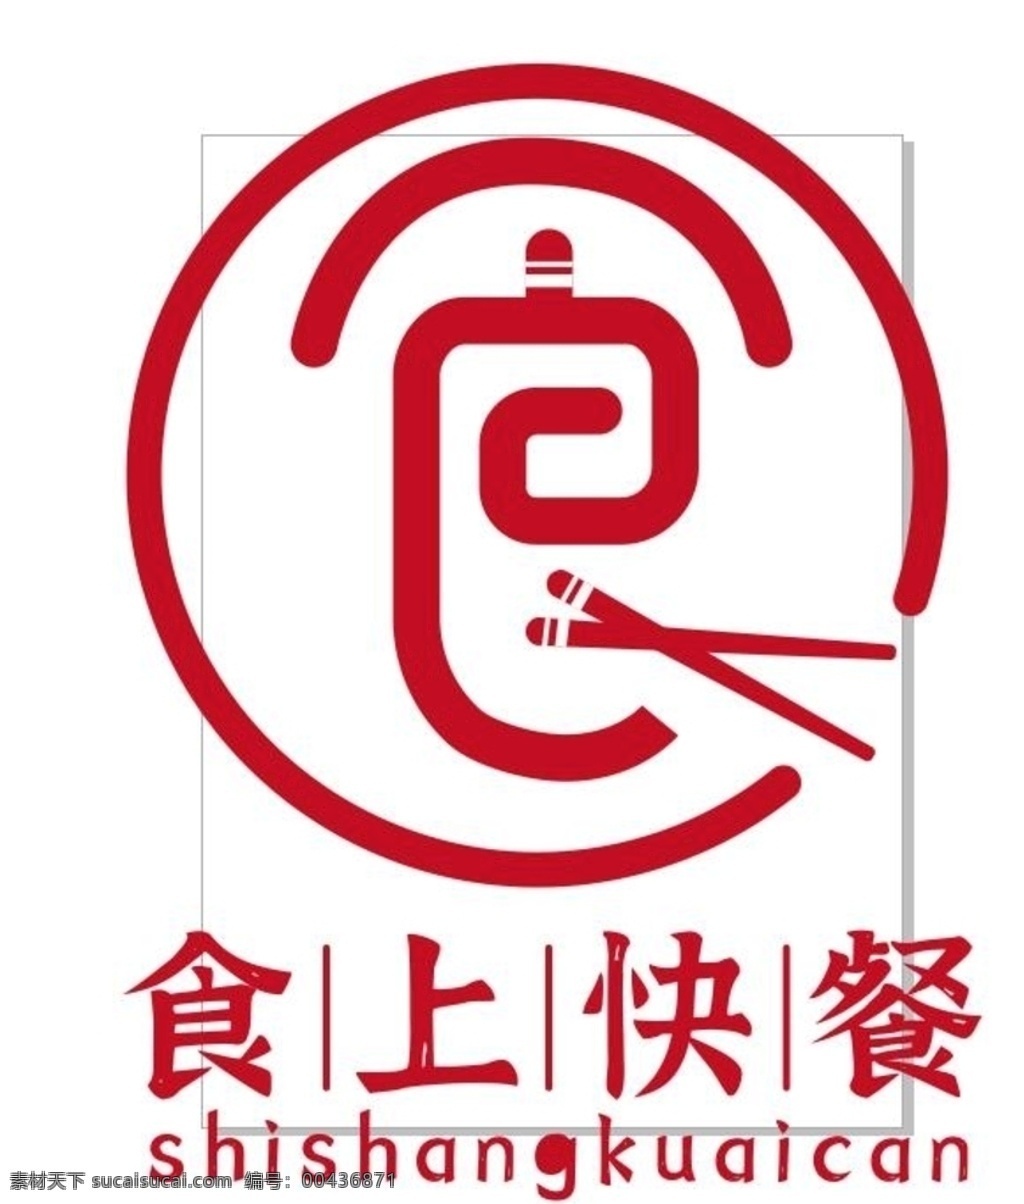 快餐 logo 餐饮 品牌 原创 素材元素 logo设计